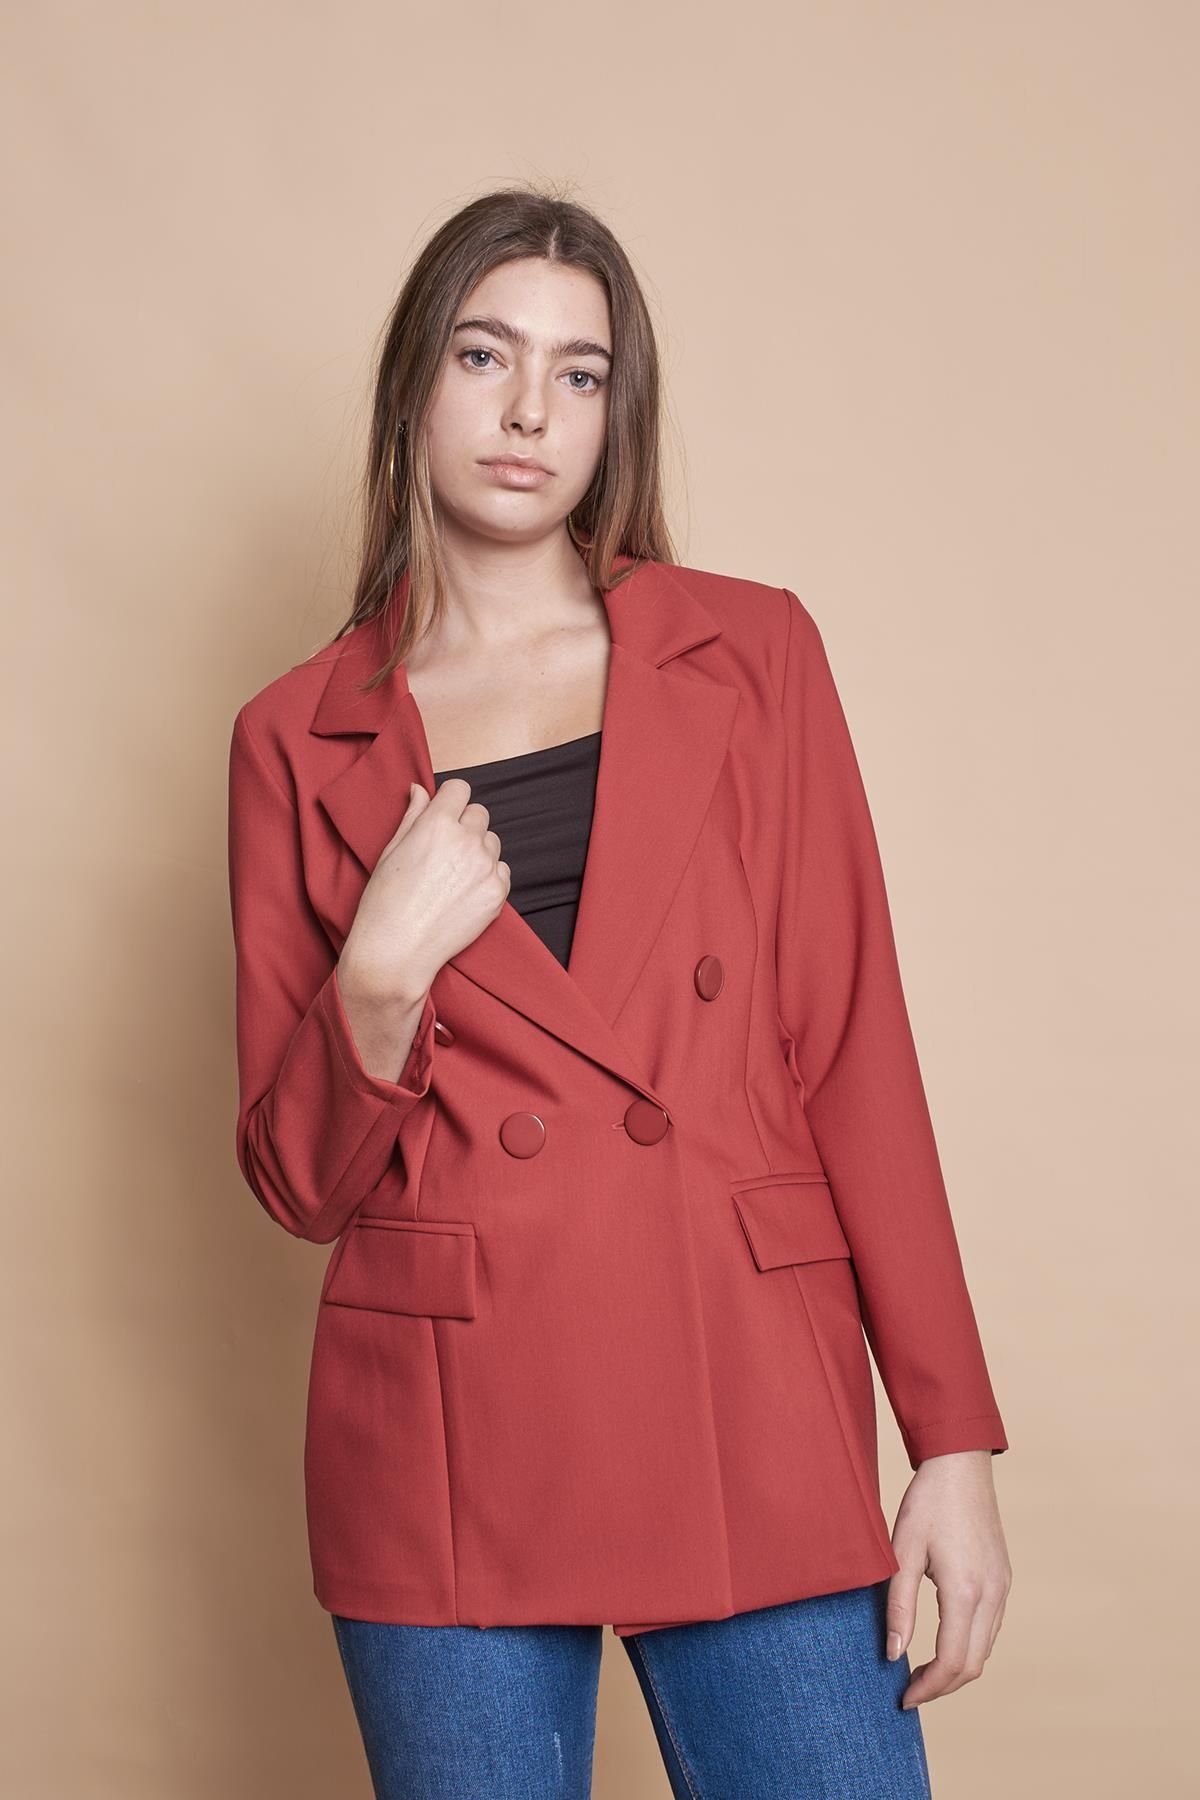 Jument Kadın Düğme Detaylı Uzun Kol Şık Ofis Süs Cep Kapaklı Kumaş Blazer Ceket -bordo